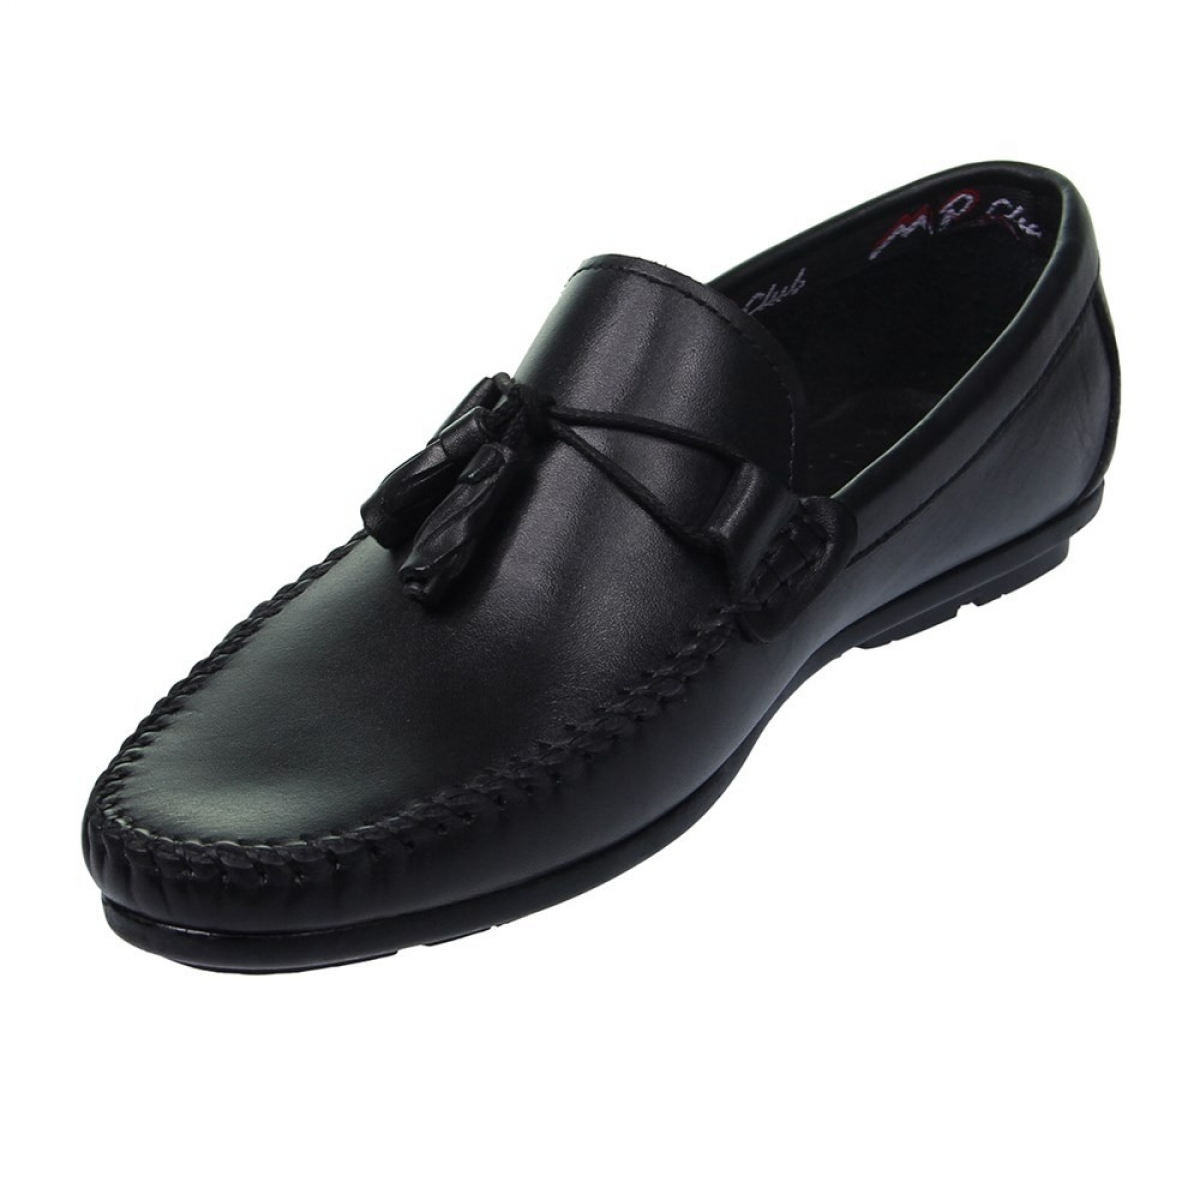 Flo Erkek Deri Siyah Casual Ayakkabı 211-4261MR 100. 3